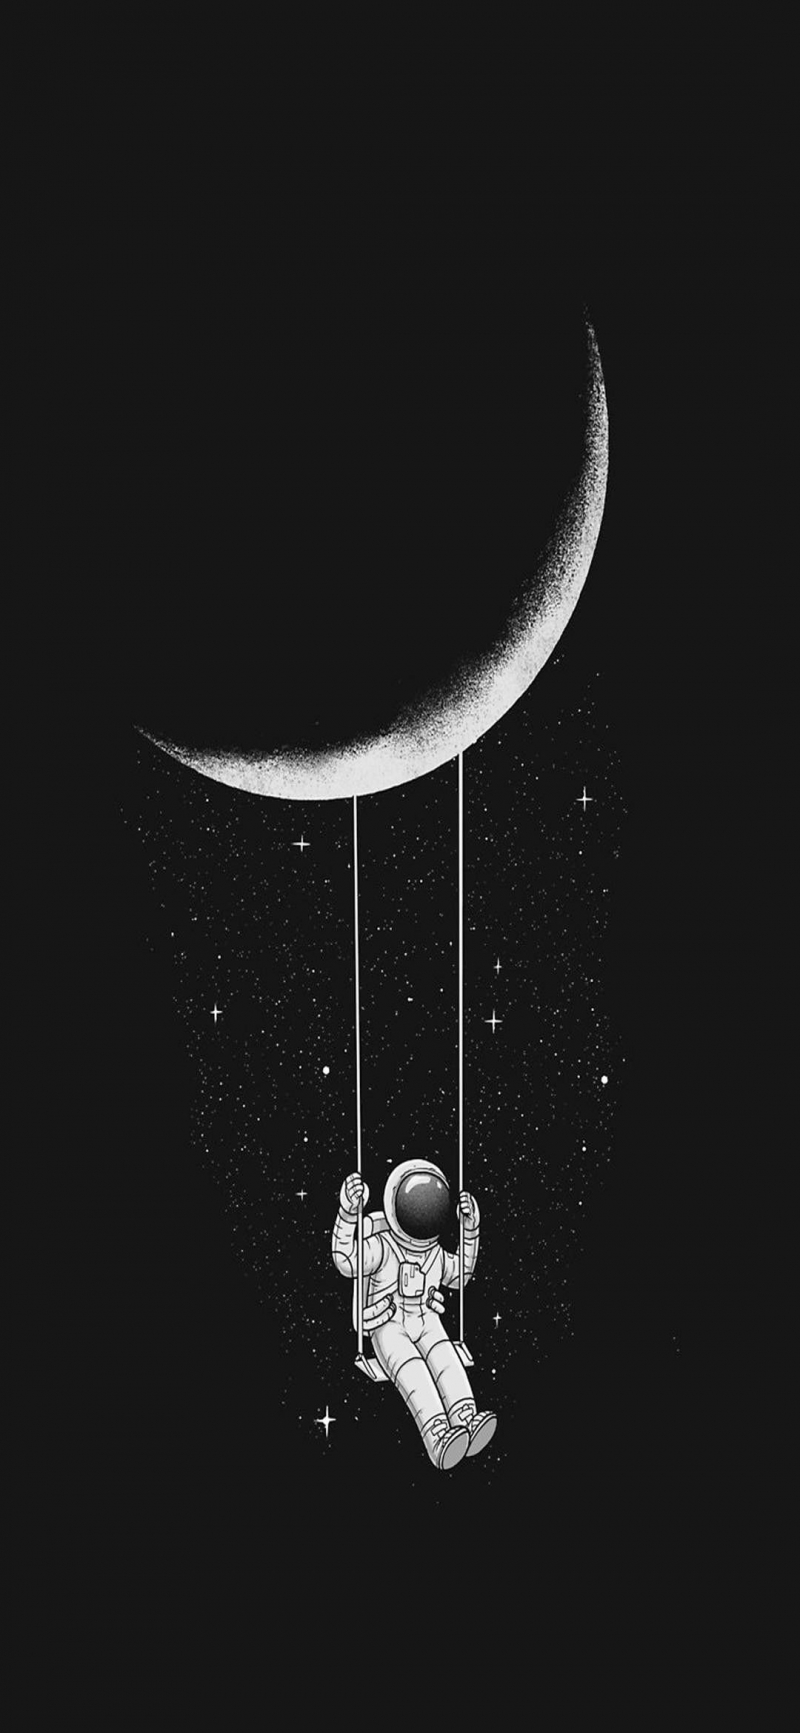 Fond écran full HD smartphone noir et blanc astronaute balançoire lune